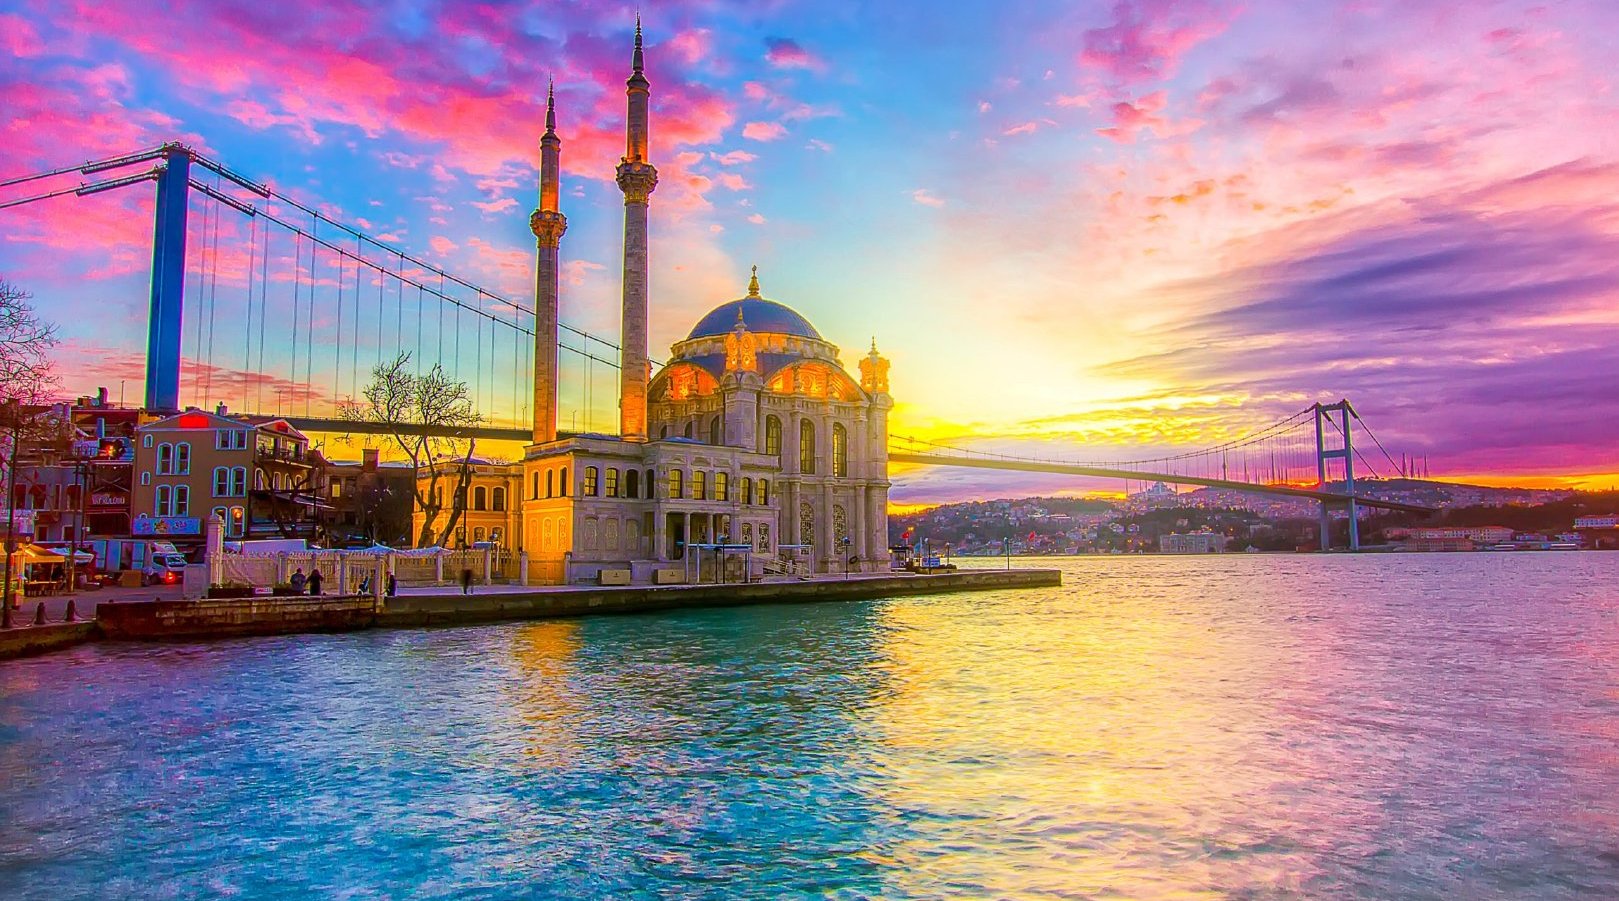 土耳其哪些海边城市的海景值得一去？ - 马蜂窝